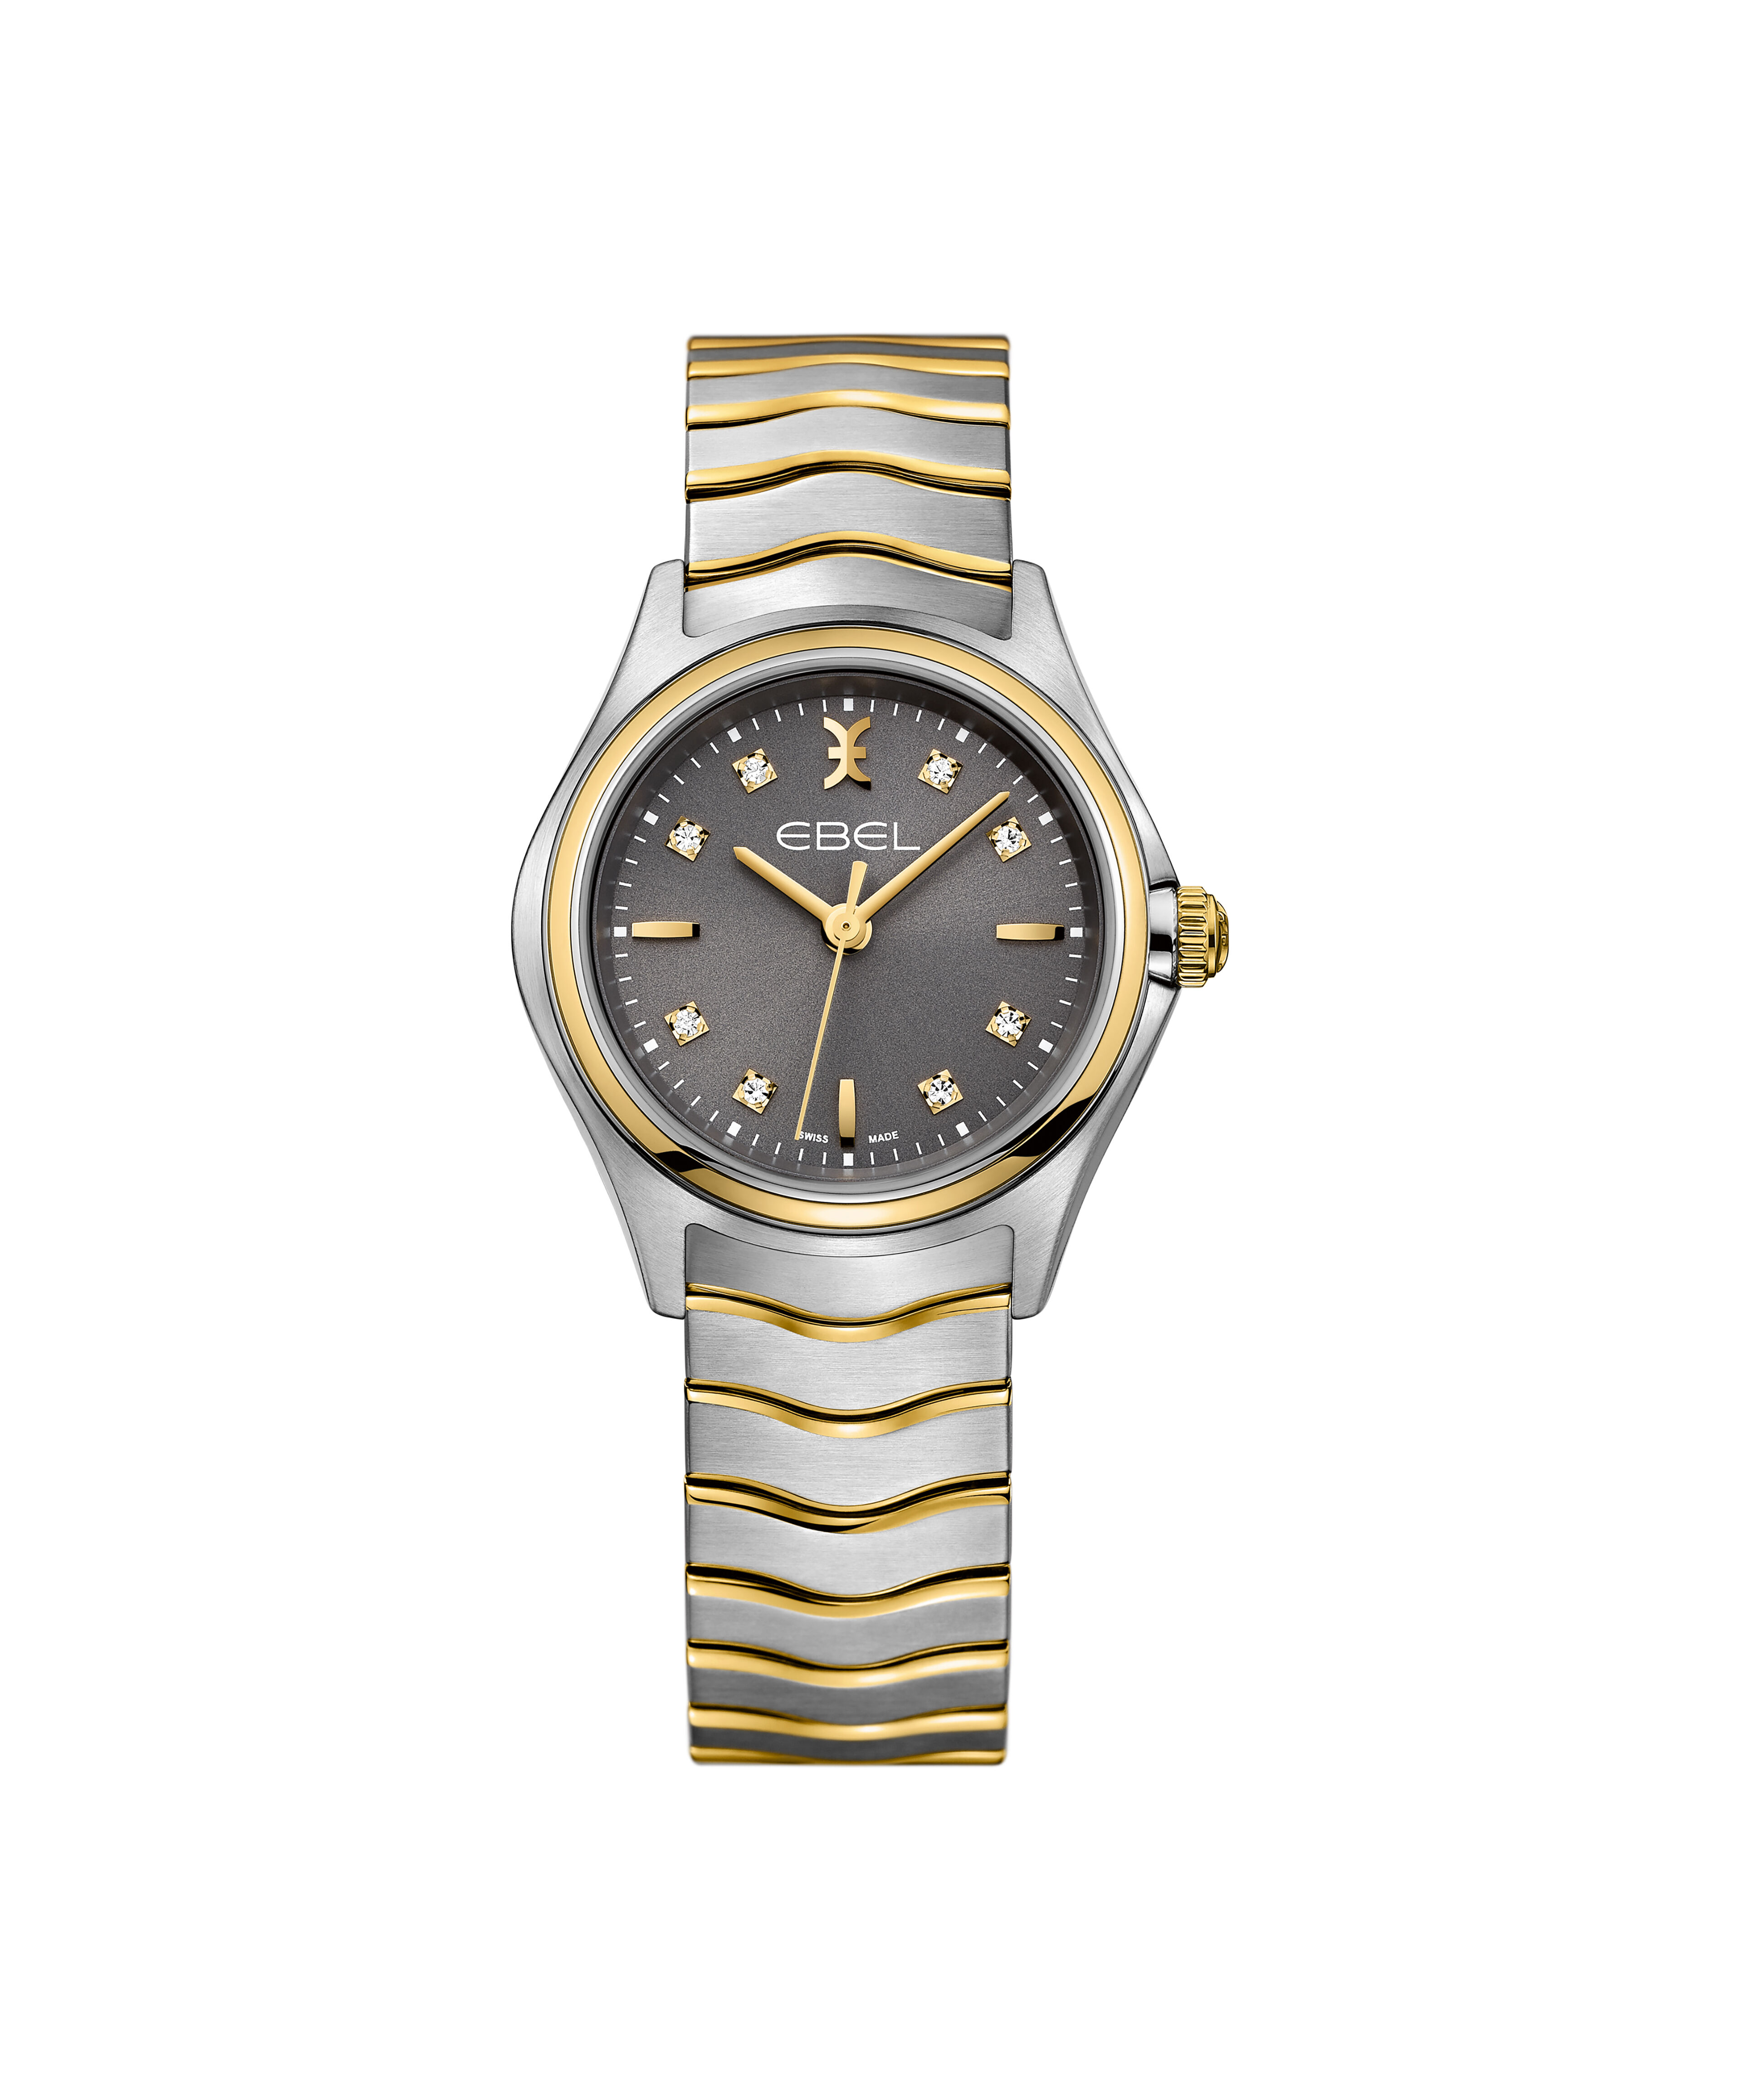 Rolex Watch Fake Ebay